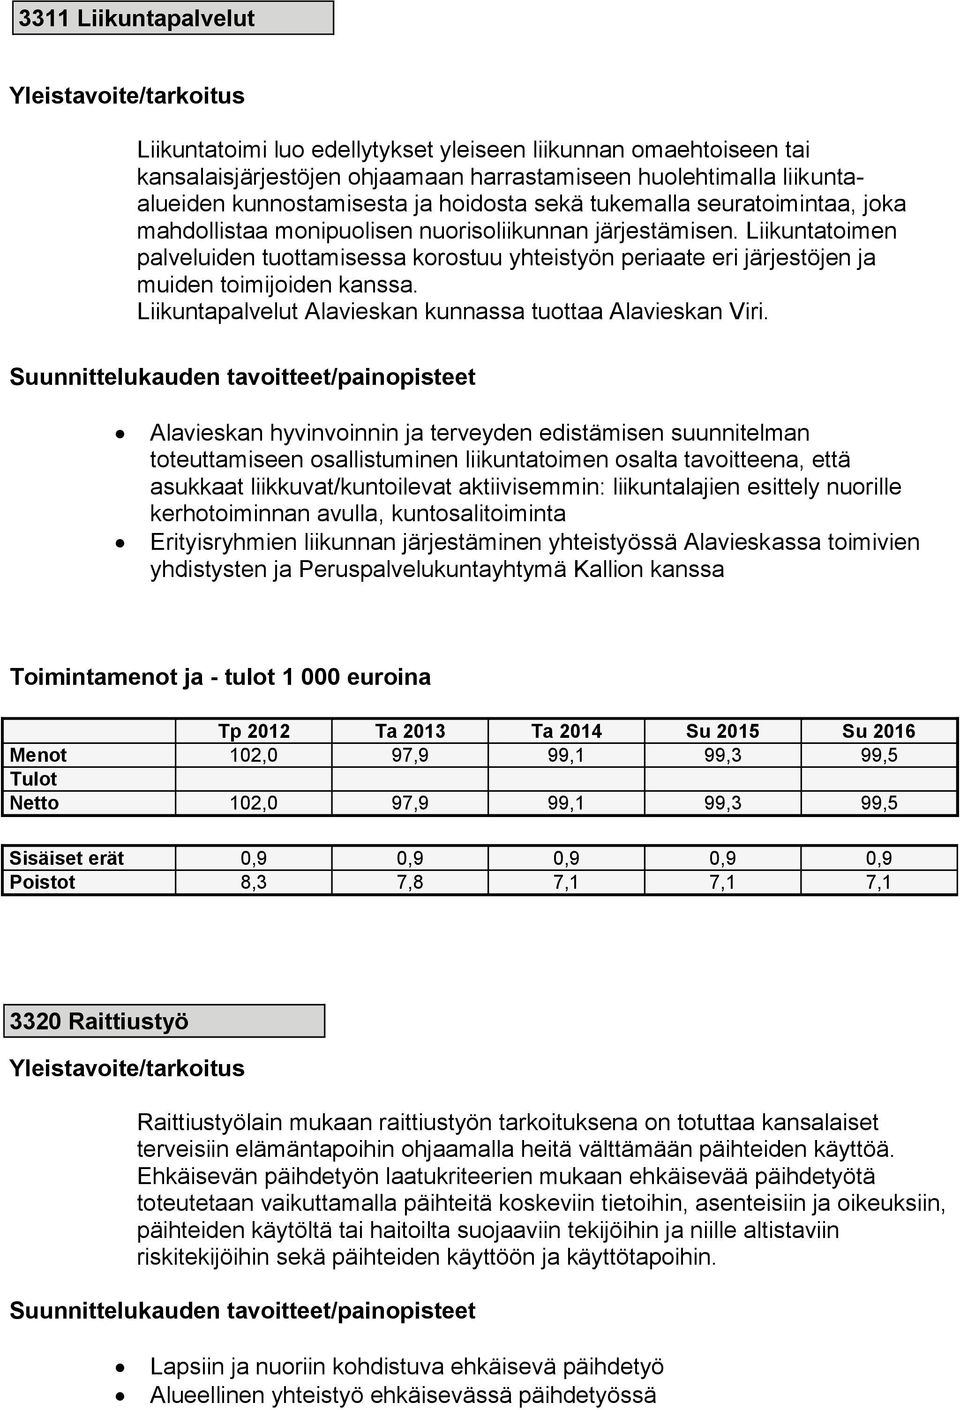 Liikuntatoimen palveluiden tuottamisessa korostuu yhteistyön periaate eri järjestöjen ja muiden toimijoiden kanssa. Liikuntapalvelut Alavieskan kunnassa tuottaa Alavieskan Viri.